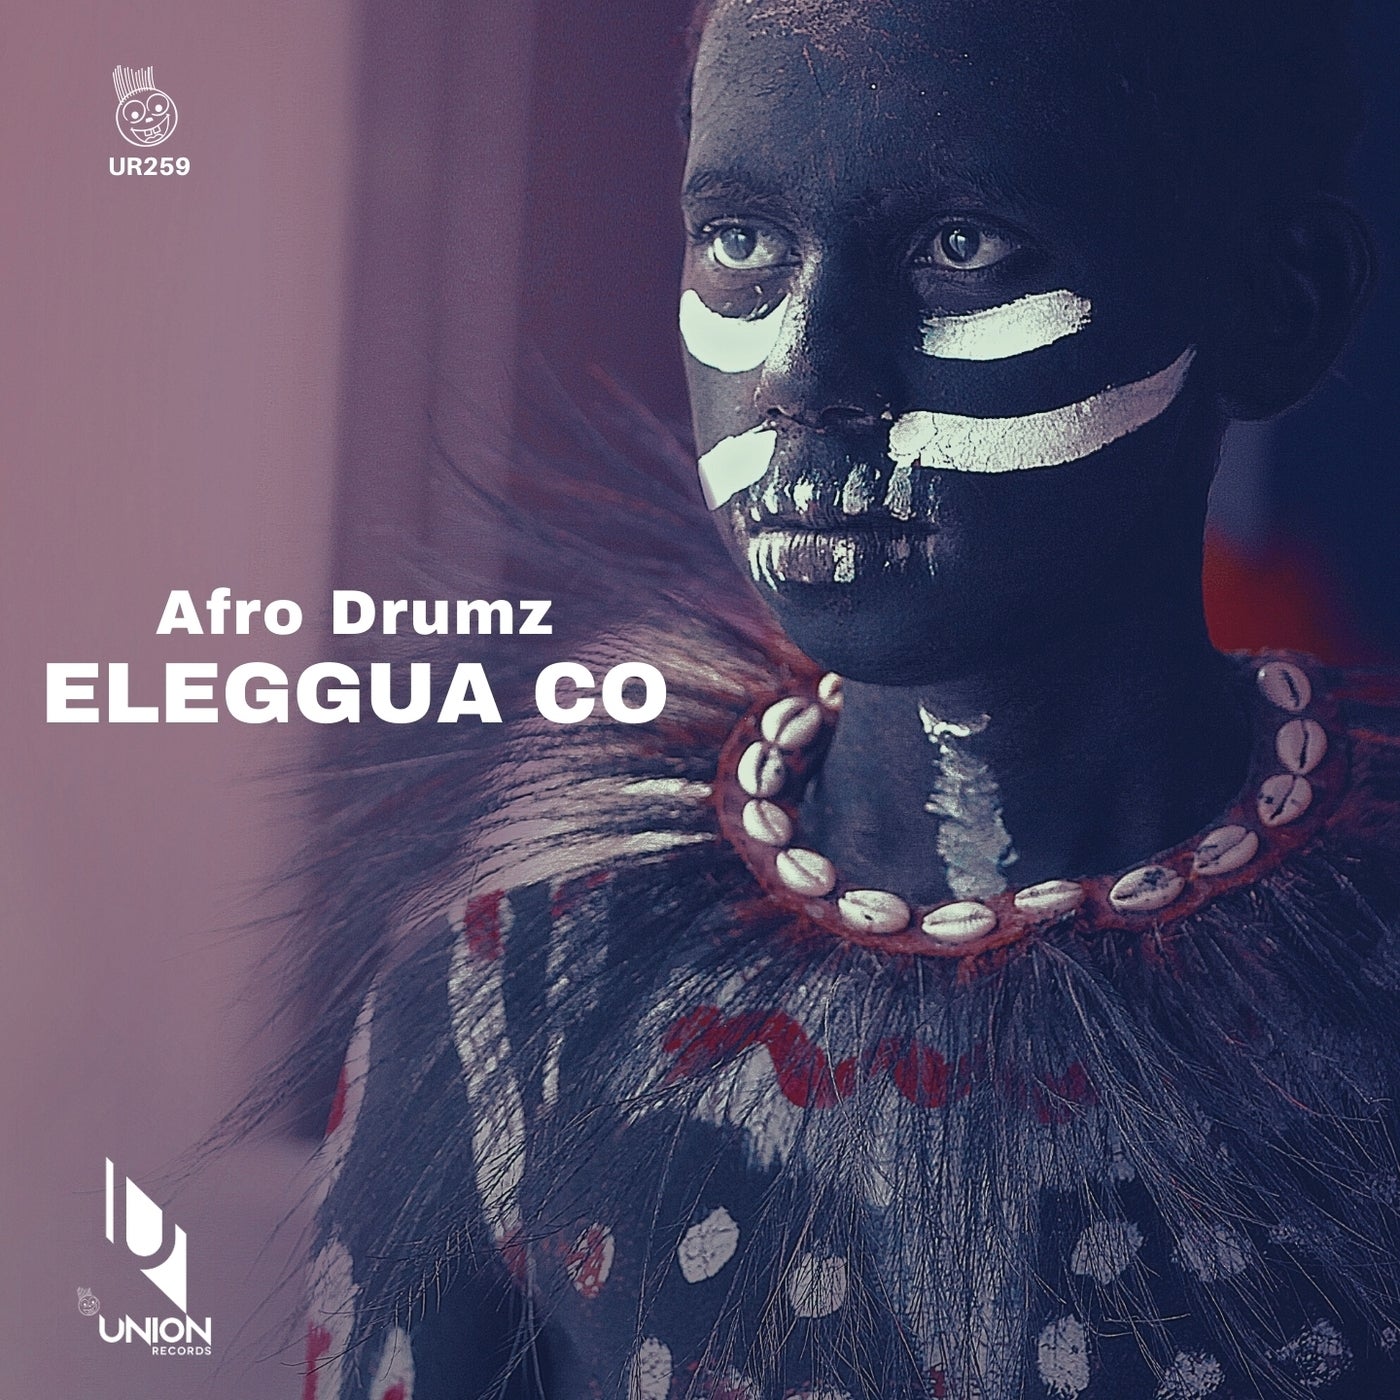 afro drumz - Eleggua Co [UR259]